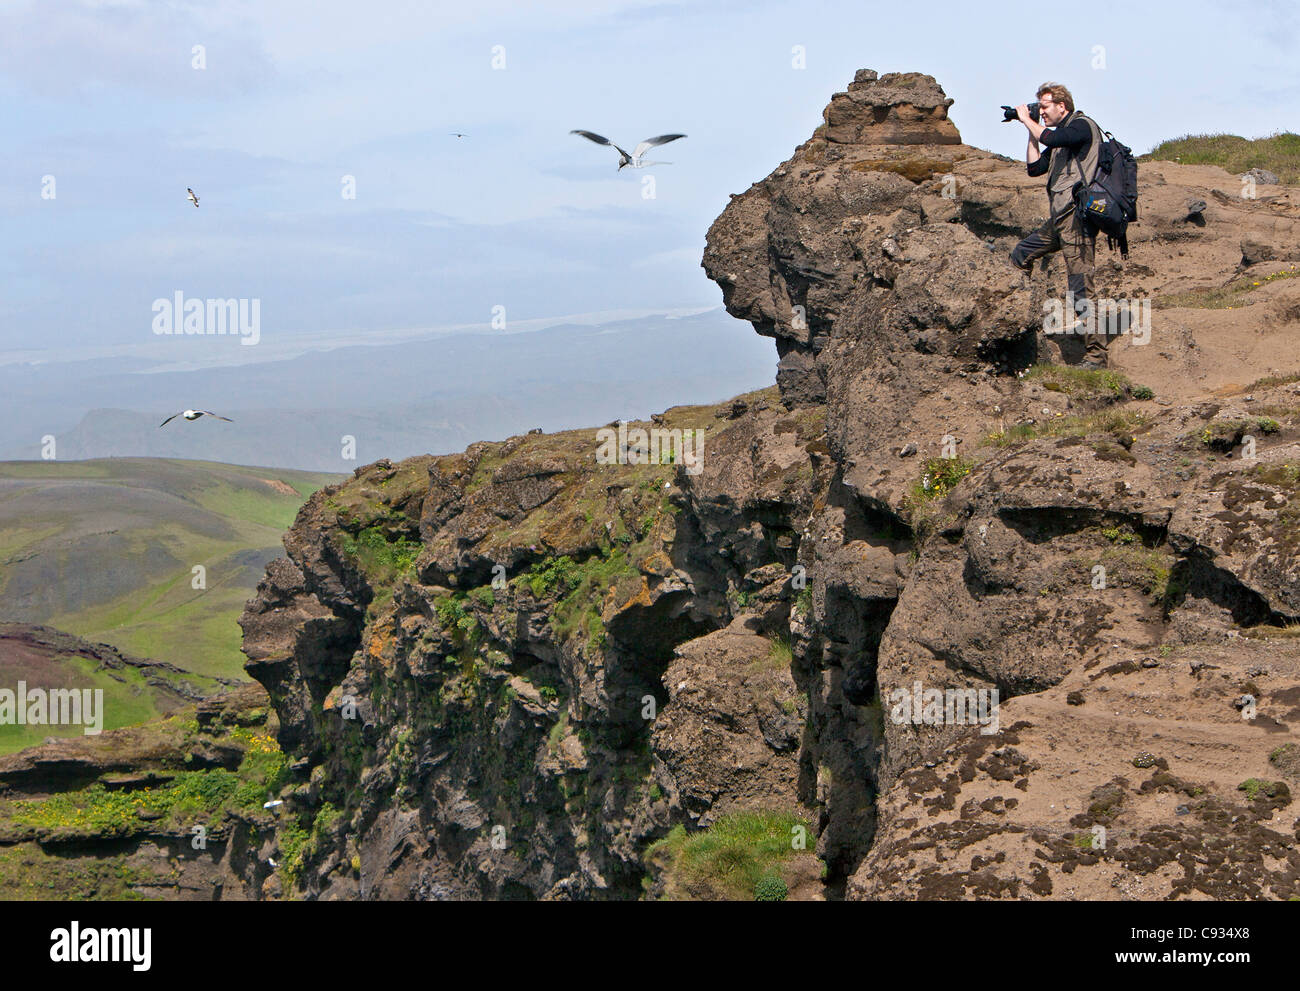 Un visiteur photos les oiseaux de mer sur les falaises de Dyrhólaey, qui sont une réserve naturelle riche en oiseaux. Banque D'Images